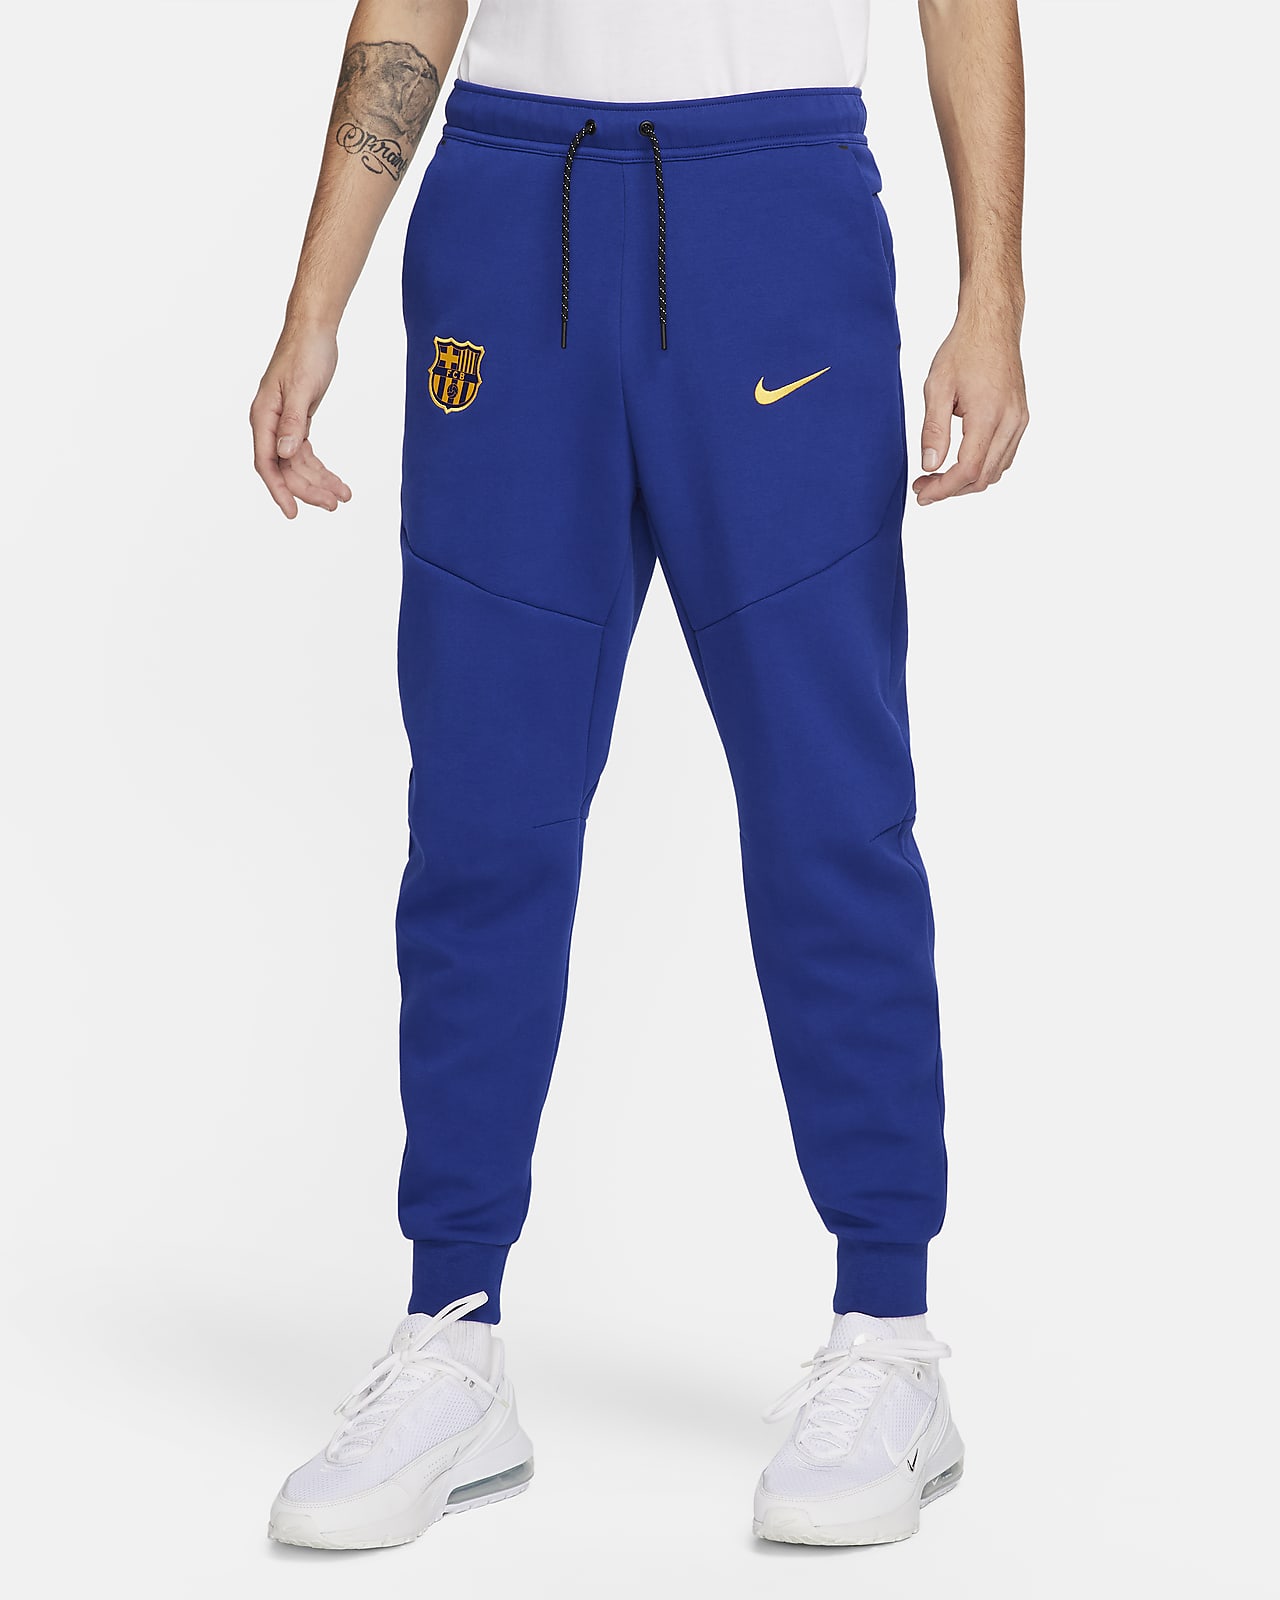 Ανδρικό ποδοσφαιρικό παντελόνι φόρμας Nike Μπαρτσελόνα Tech Fleece